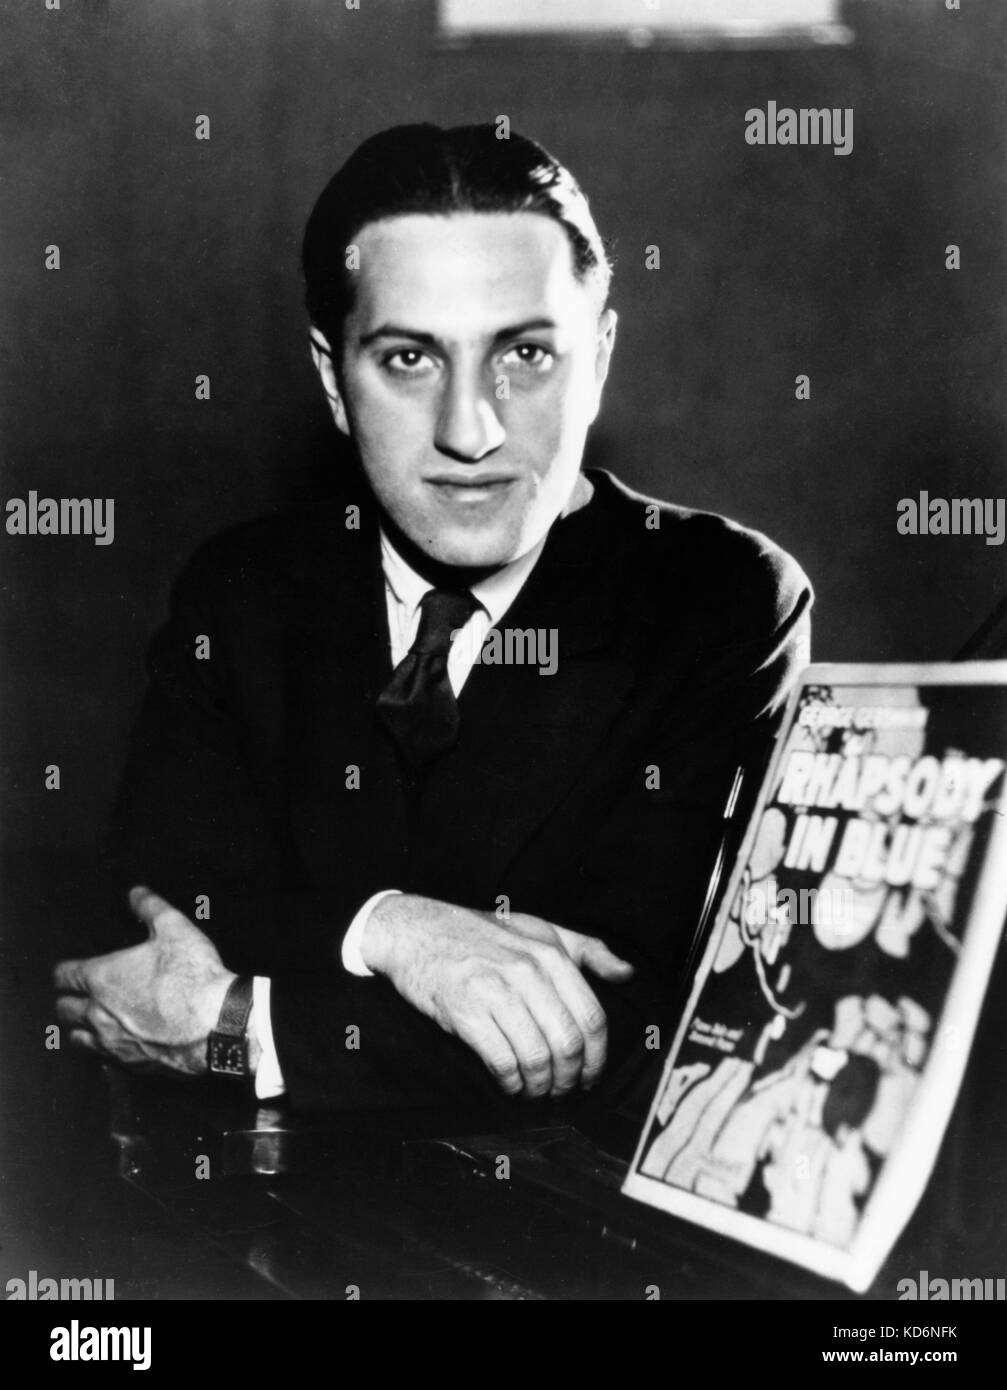 George Gershwin - Retrato . junto a la puntuación de cubierta de Rhapsody in blue. El compositor y pianista estadounidense el 26 de septiembre de 1898 - 11 de julio de 1937 Foto de stock